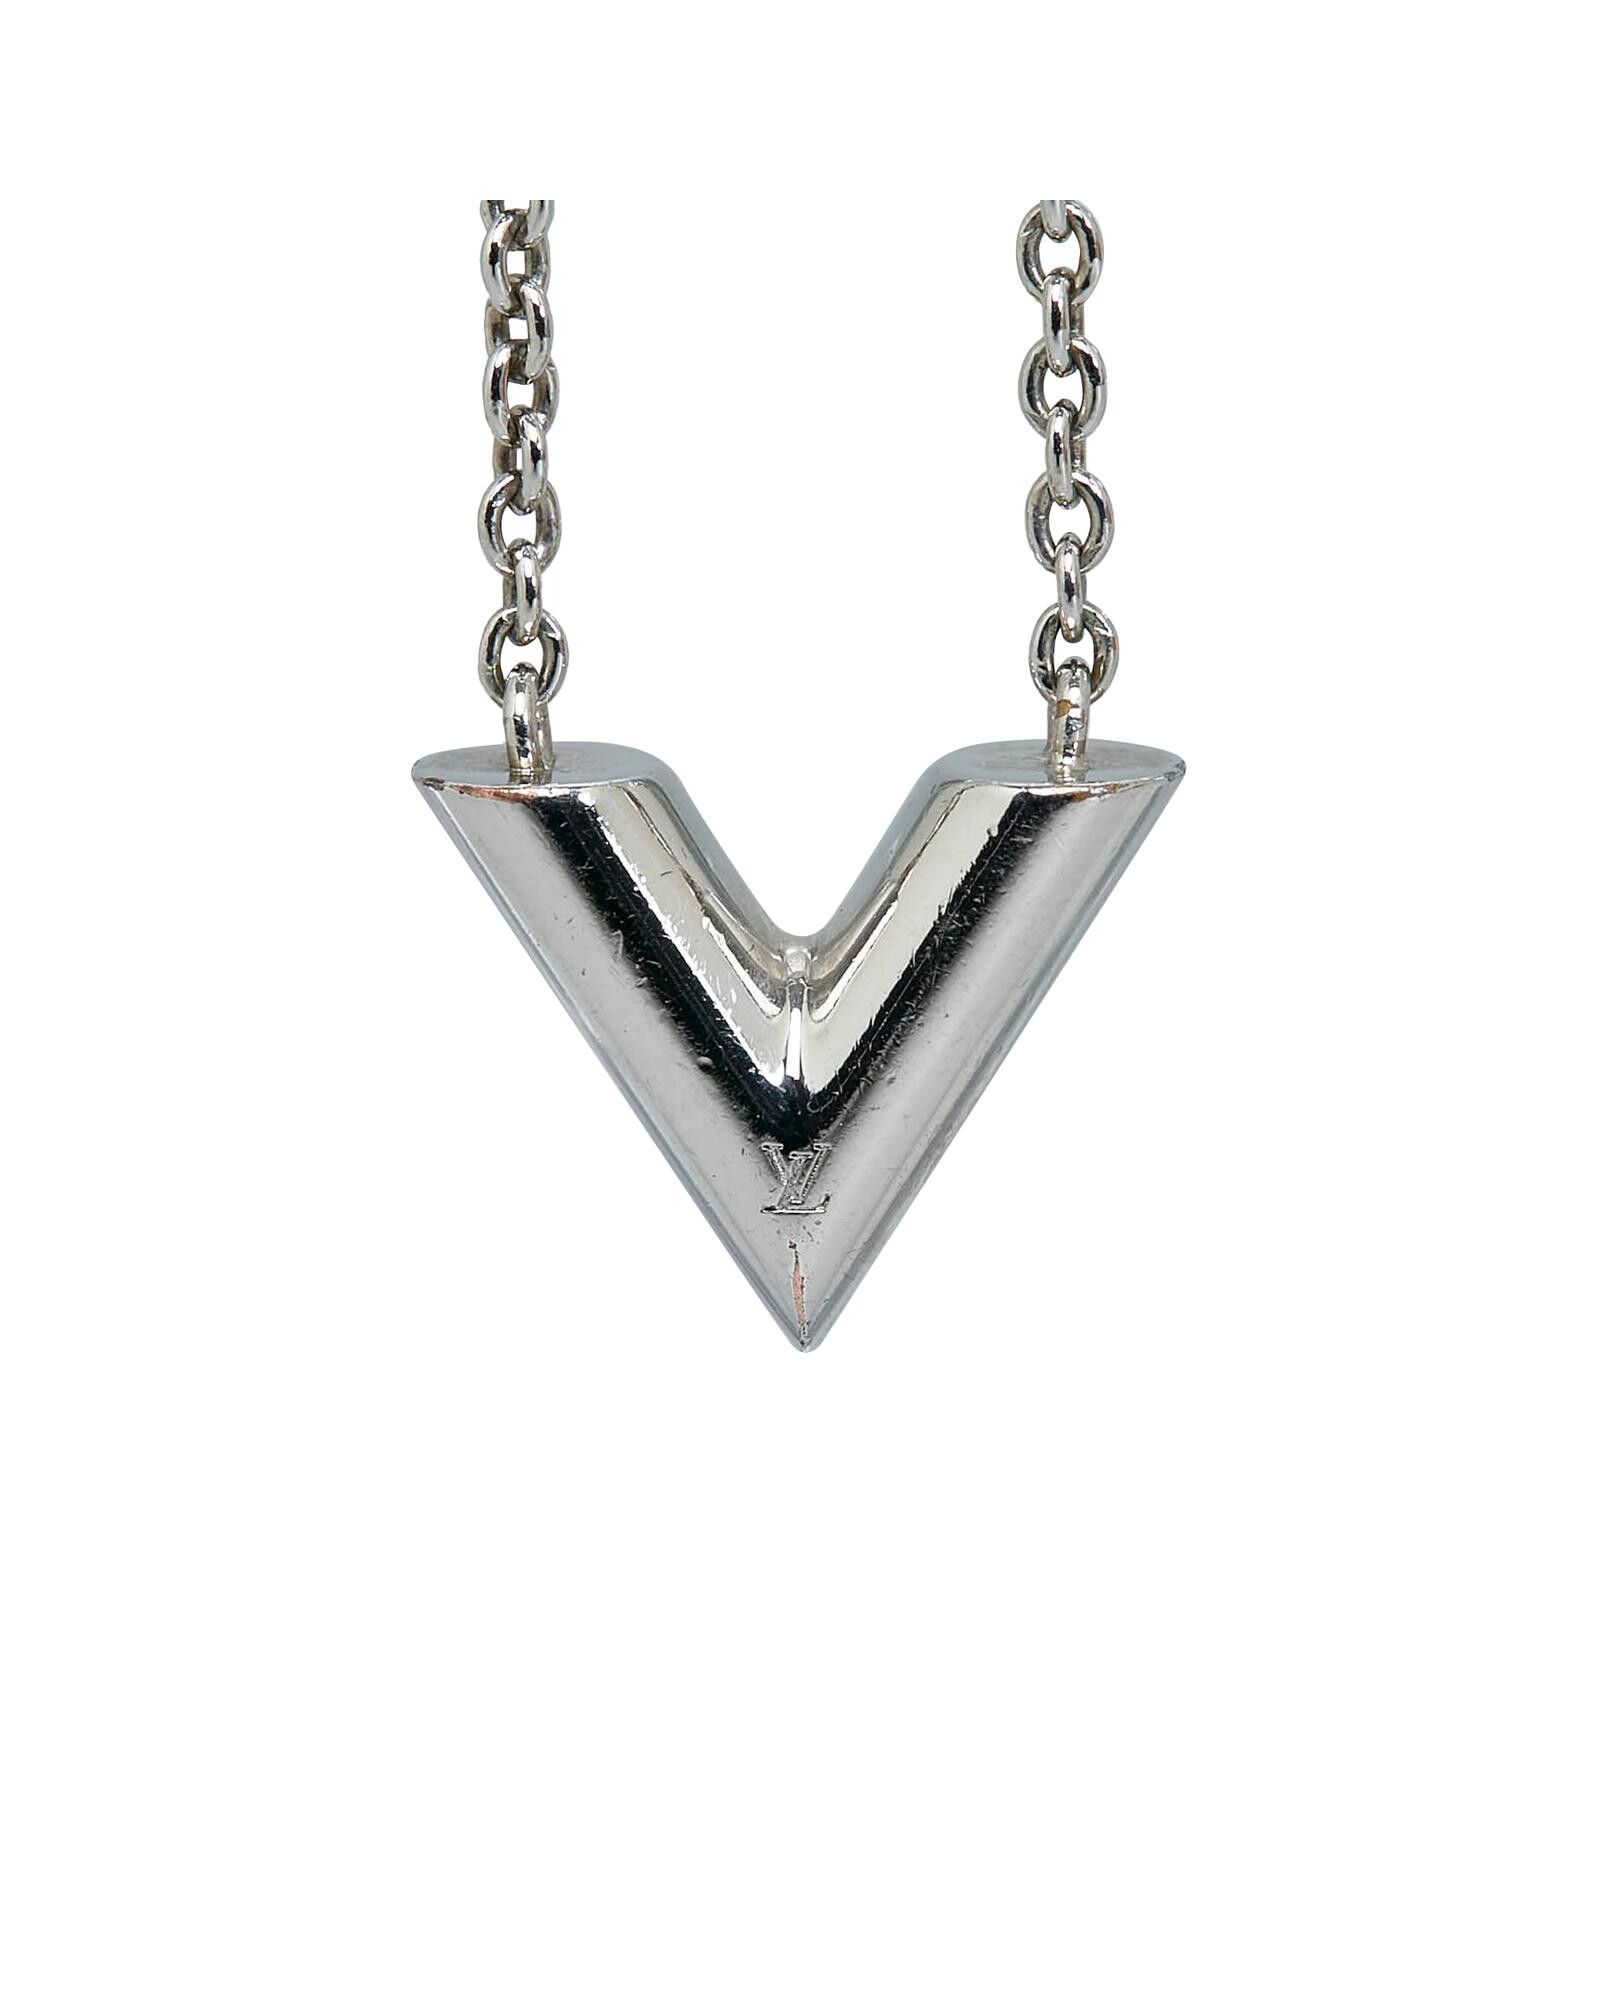 Louis Vuitton LOUIS VUITTON necklace monogram locket metal silver unisex  M62484